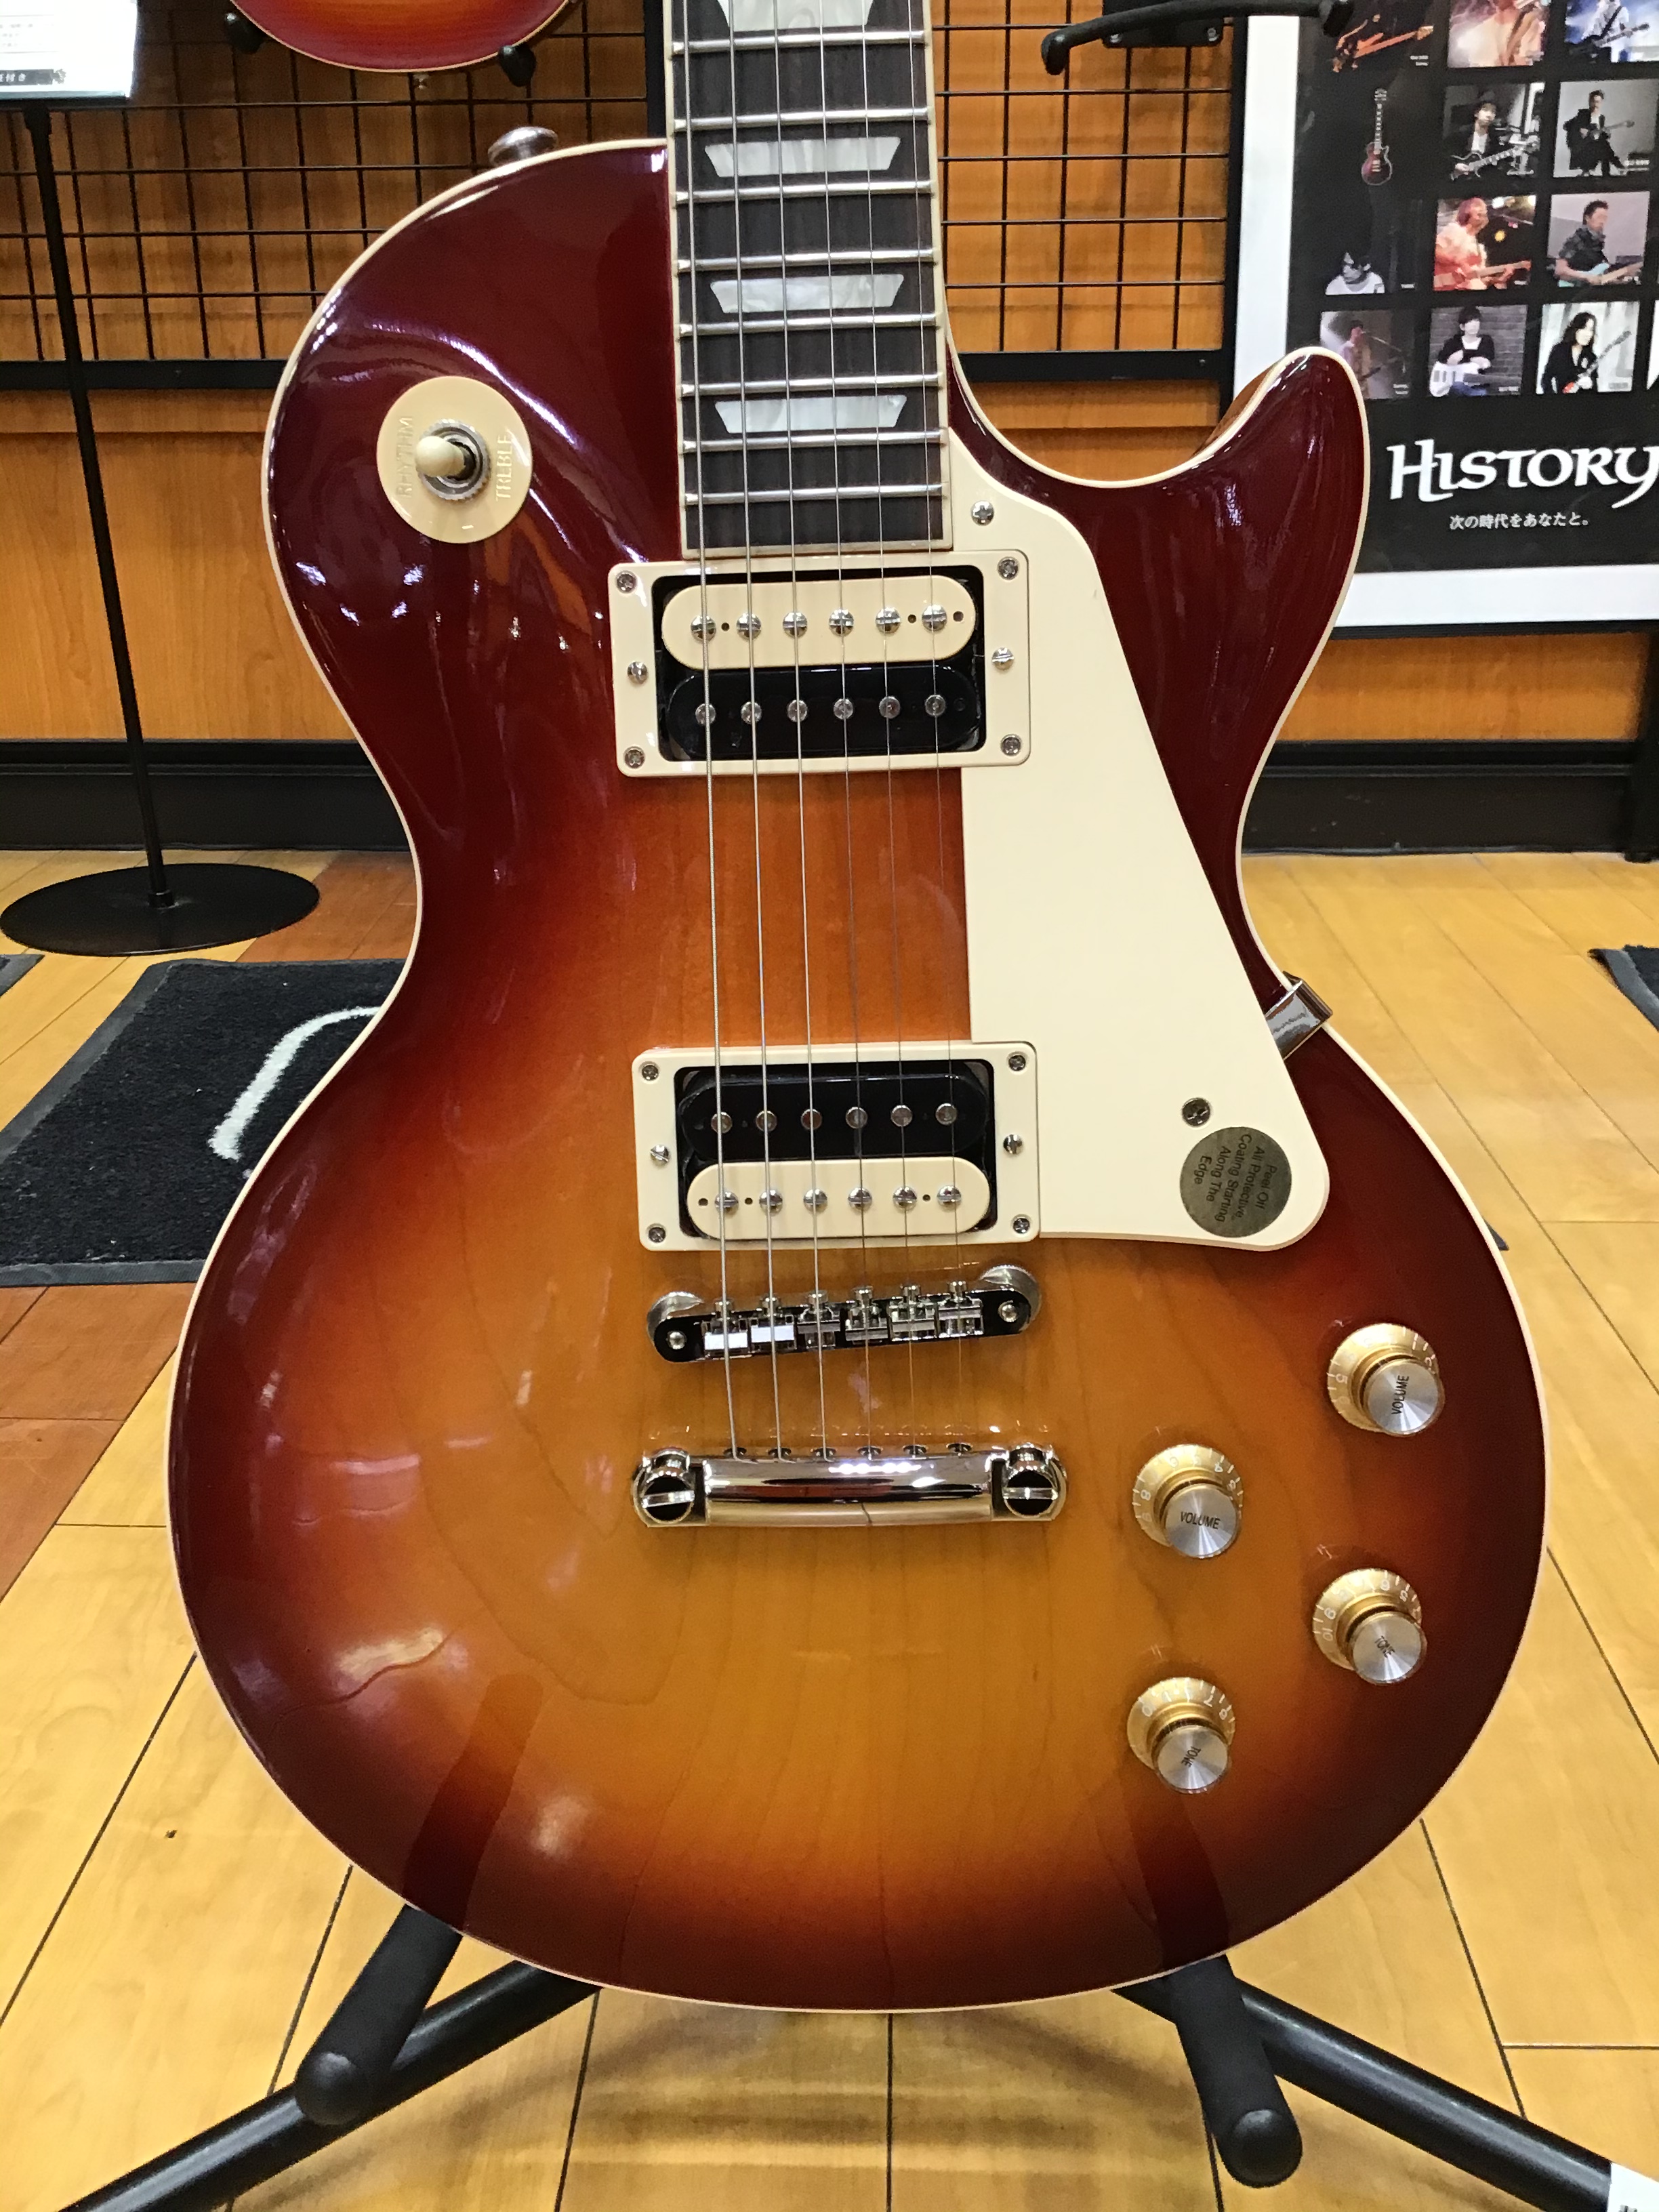 エレキギター 今週の担当オススメ品の紹介 Gibson Les Paul Classic 郡山アティ店 店舗情報 島村楽器